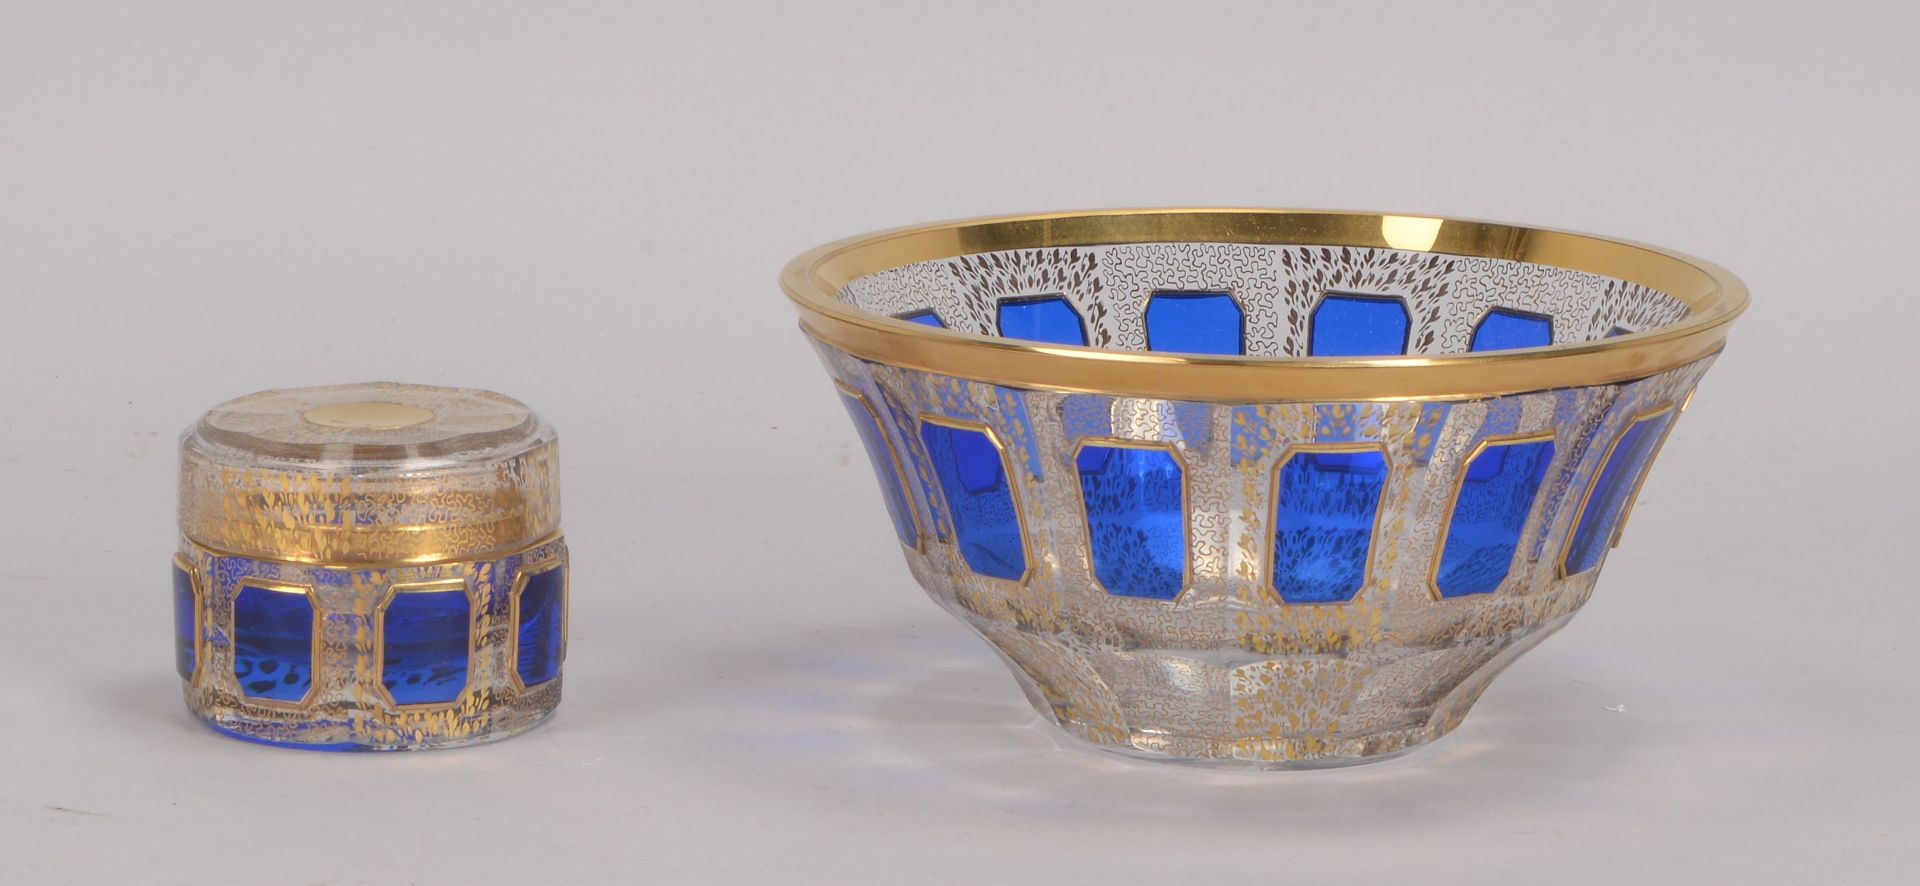 2 Glasgefäße (Böhmen), Deckelgefäß und Schale, geschnitten, jeweils mit blauem Überfang, mit Goldmal